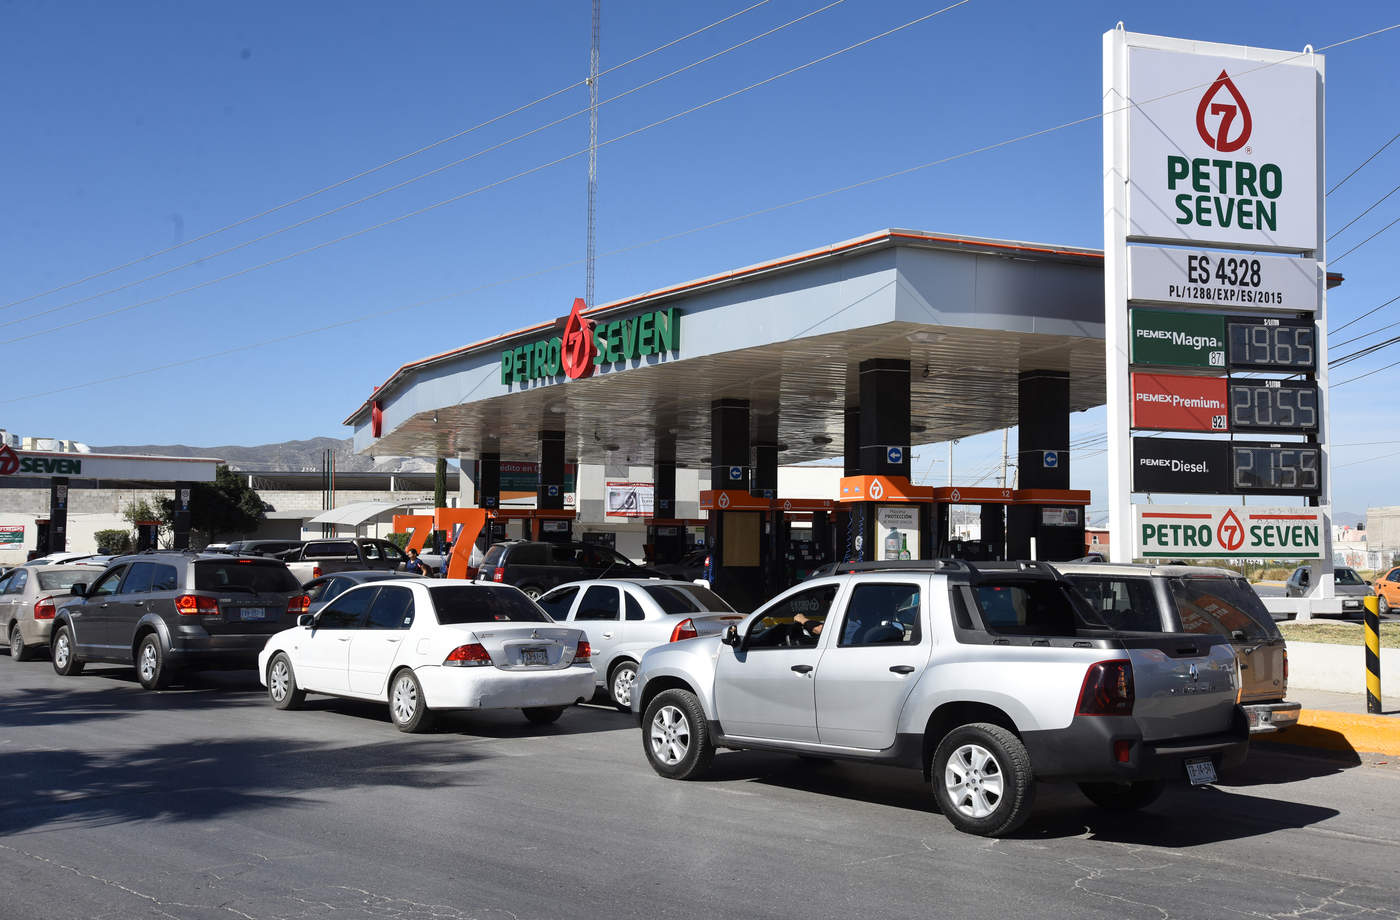 En Torreón desde la tarde, noche del sábado, empezó a generarse una situación inusual cuando decenas de ciudadanos se volcaron a surtir gasolina en tanques llenos.